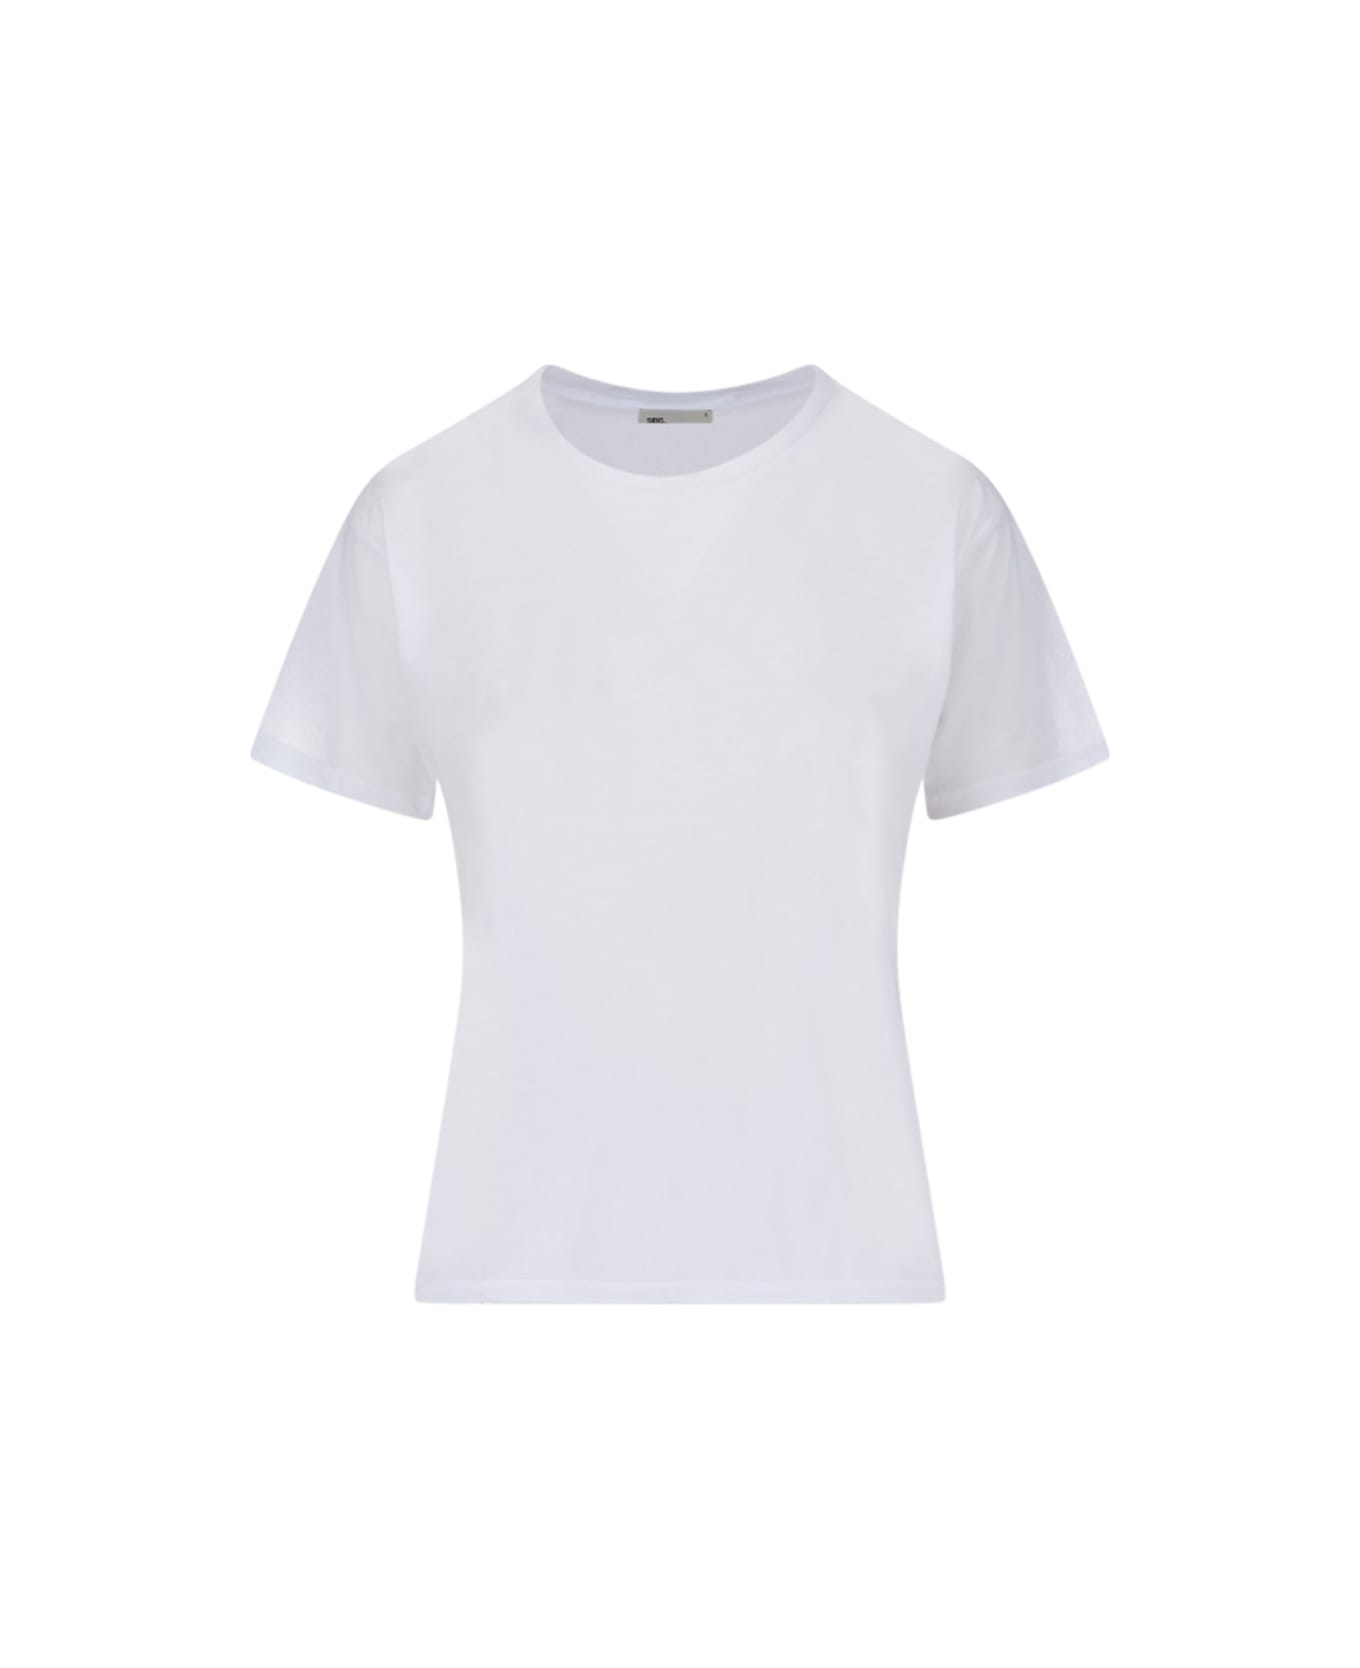 Sibel Saral Cotton T-shirt - White